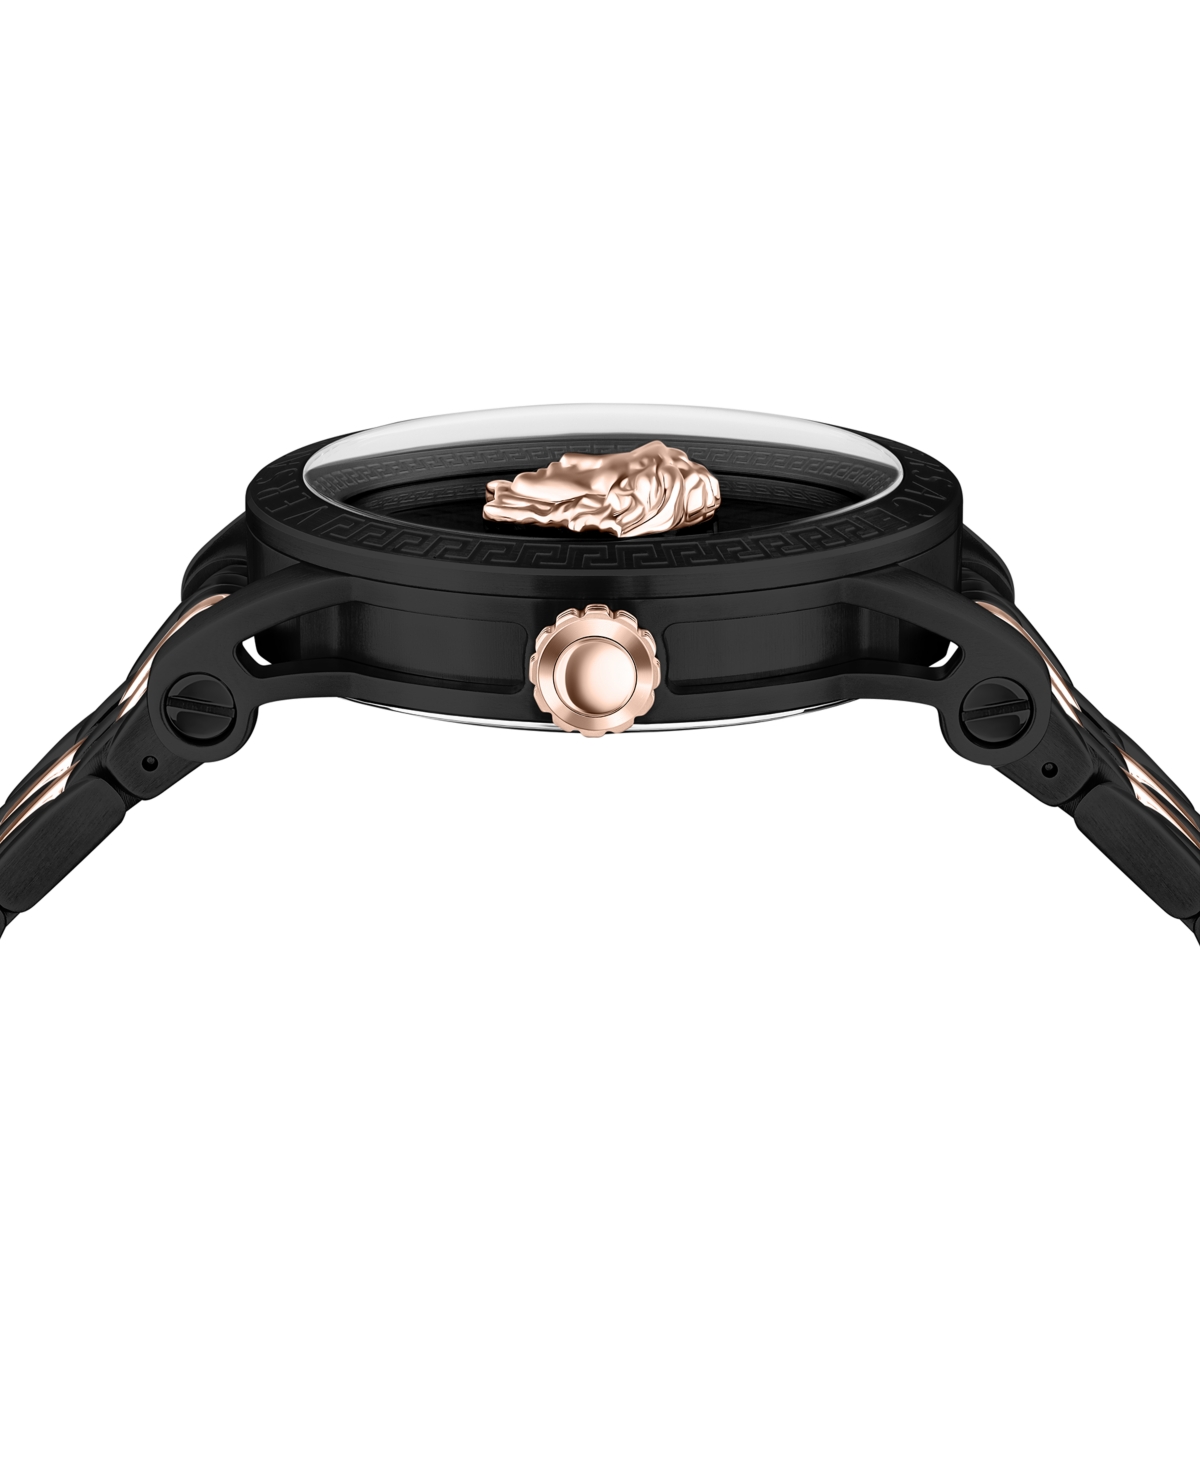 Shop Versace Men's Swiss V-code Two Tone Bracelet Watch 43mm